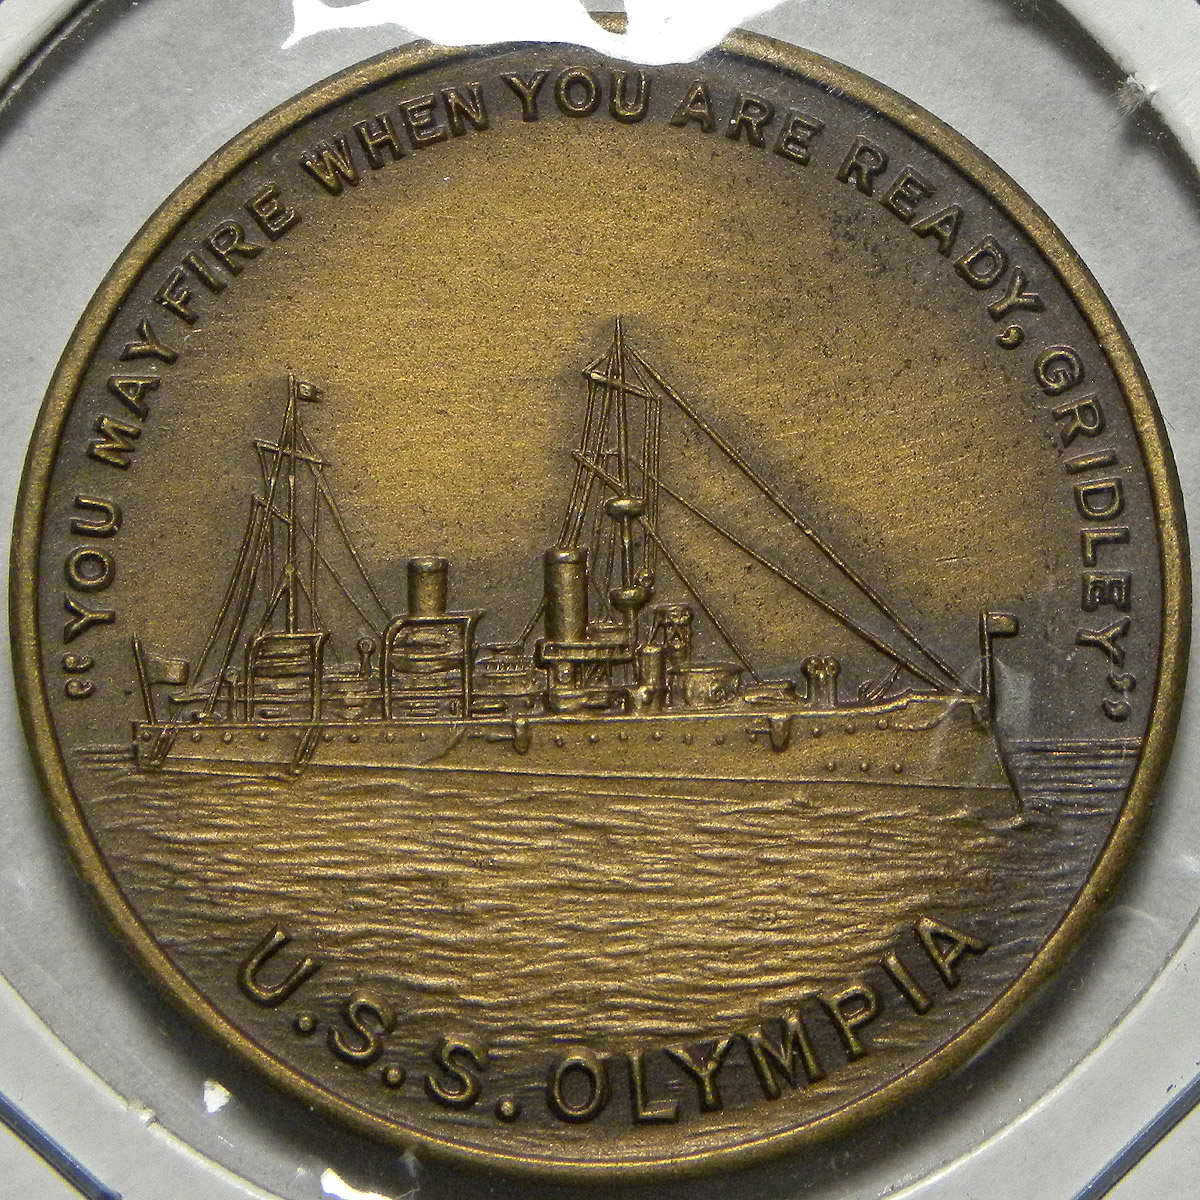 Admiral Dewey / U.S.S. Olympia / Battle of Manila Bay medal (obverse)